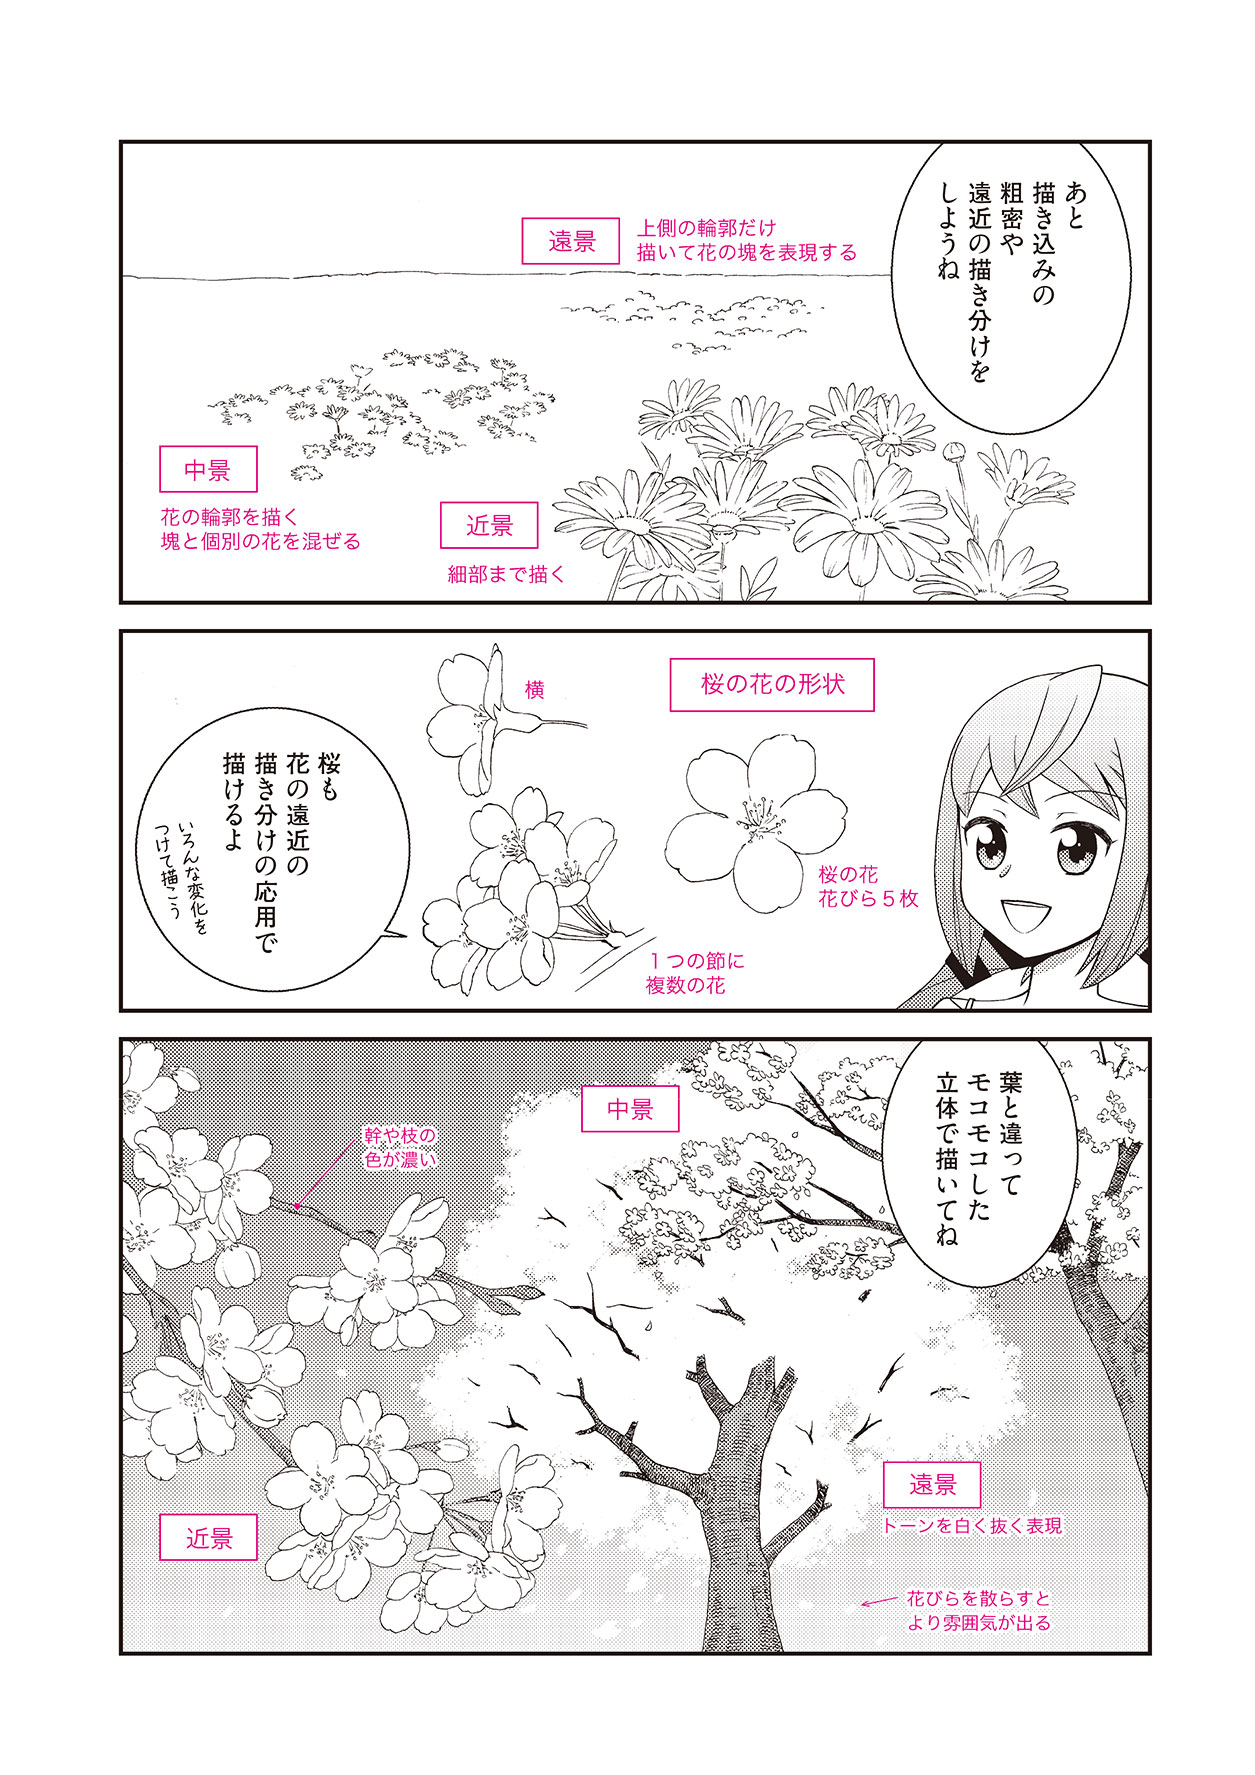 美しい花の画像 50 かわいい 桜 イラスト 簡単